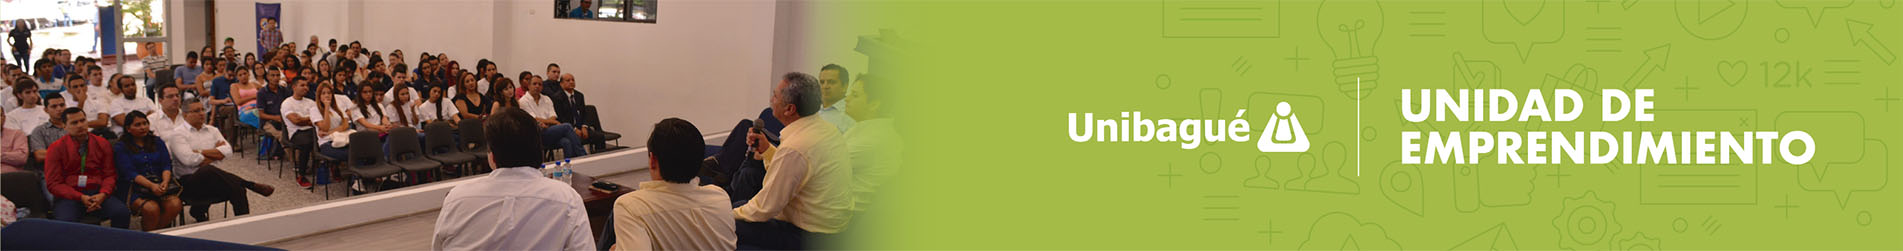 Imagen a manera de banner donde podemos visualizar una reunión de emprendedores la imagen tiene el título de Unidad de emprendimiento Universidad de Ibagué